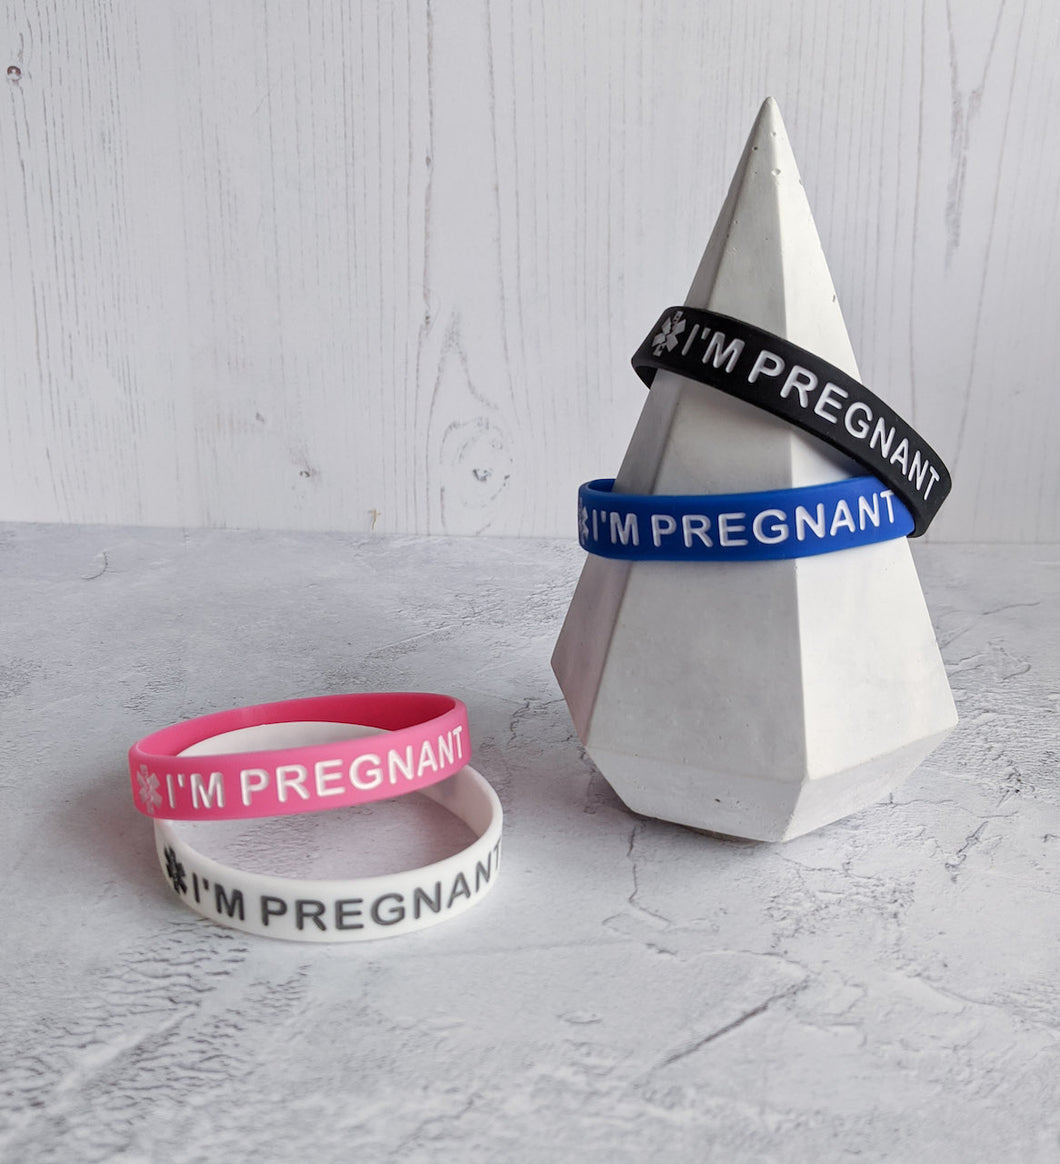 Pregnancy bracelet